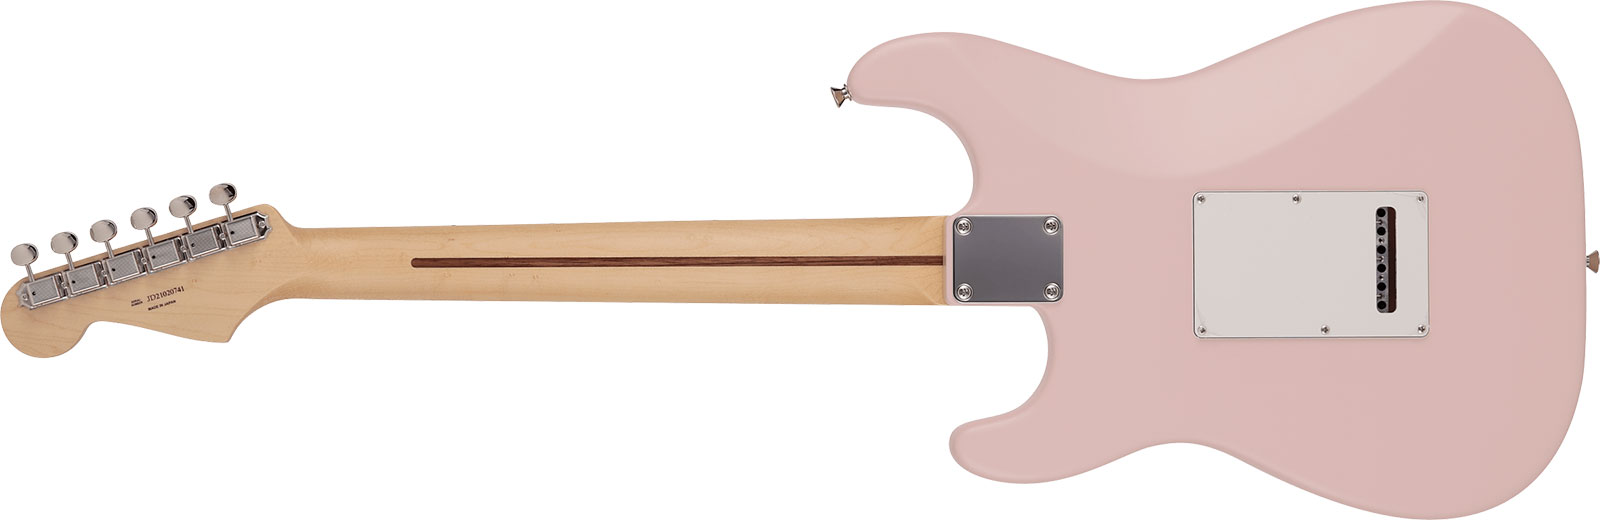 Fender Strat Junior Mij Jap 3s Trem Rw - Satin Shell Pink - E-Gitarre für Kinder - Variation 1